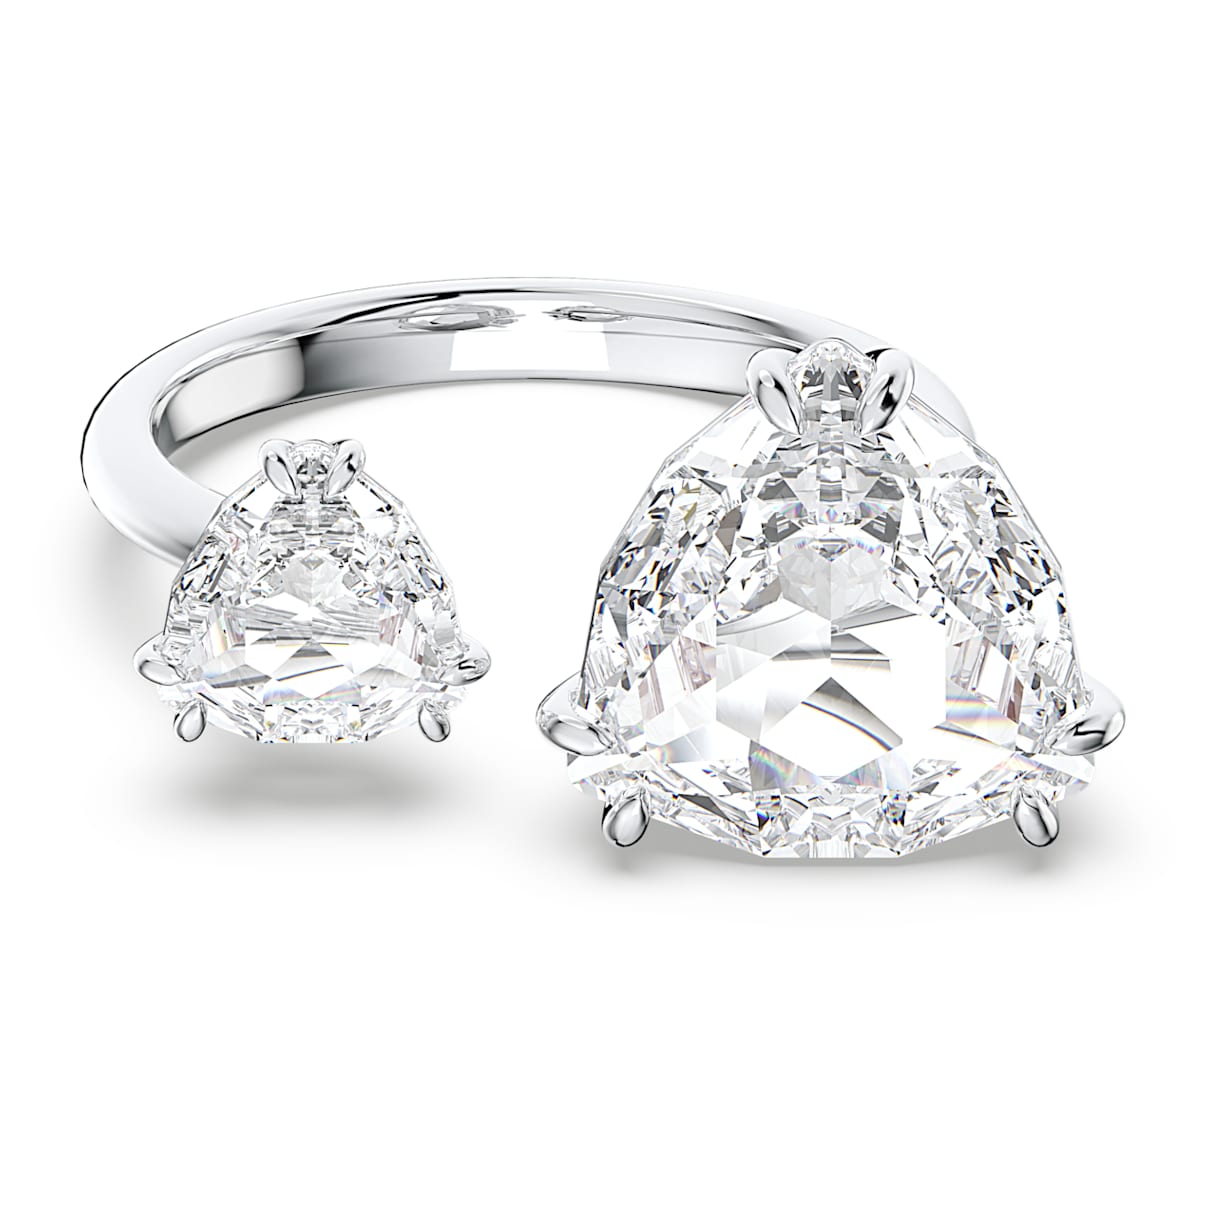 Swarovski Millenia open ring, Trilliant cut crystals, White